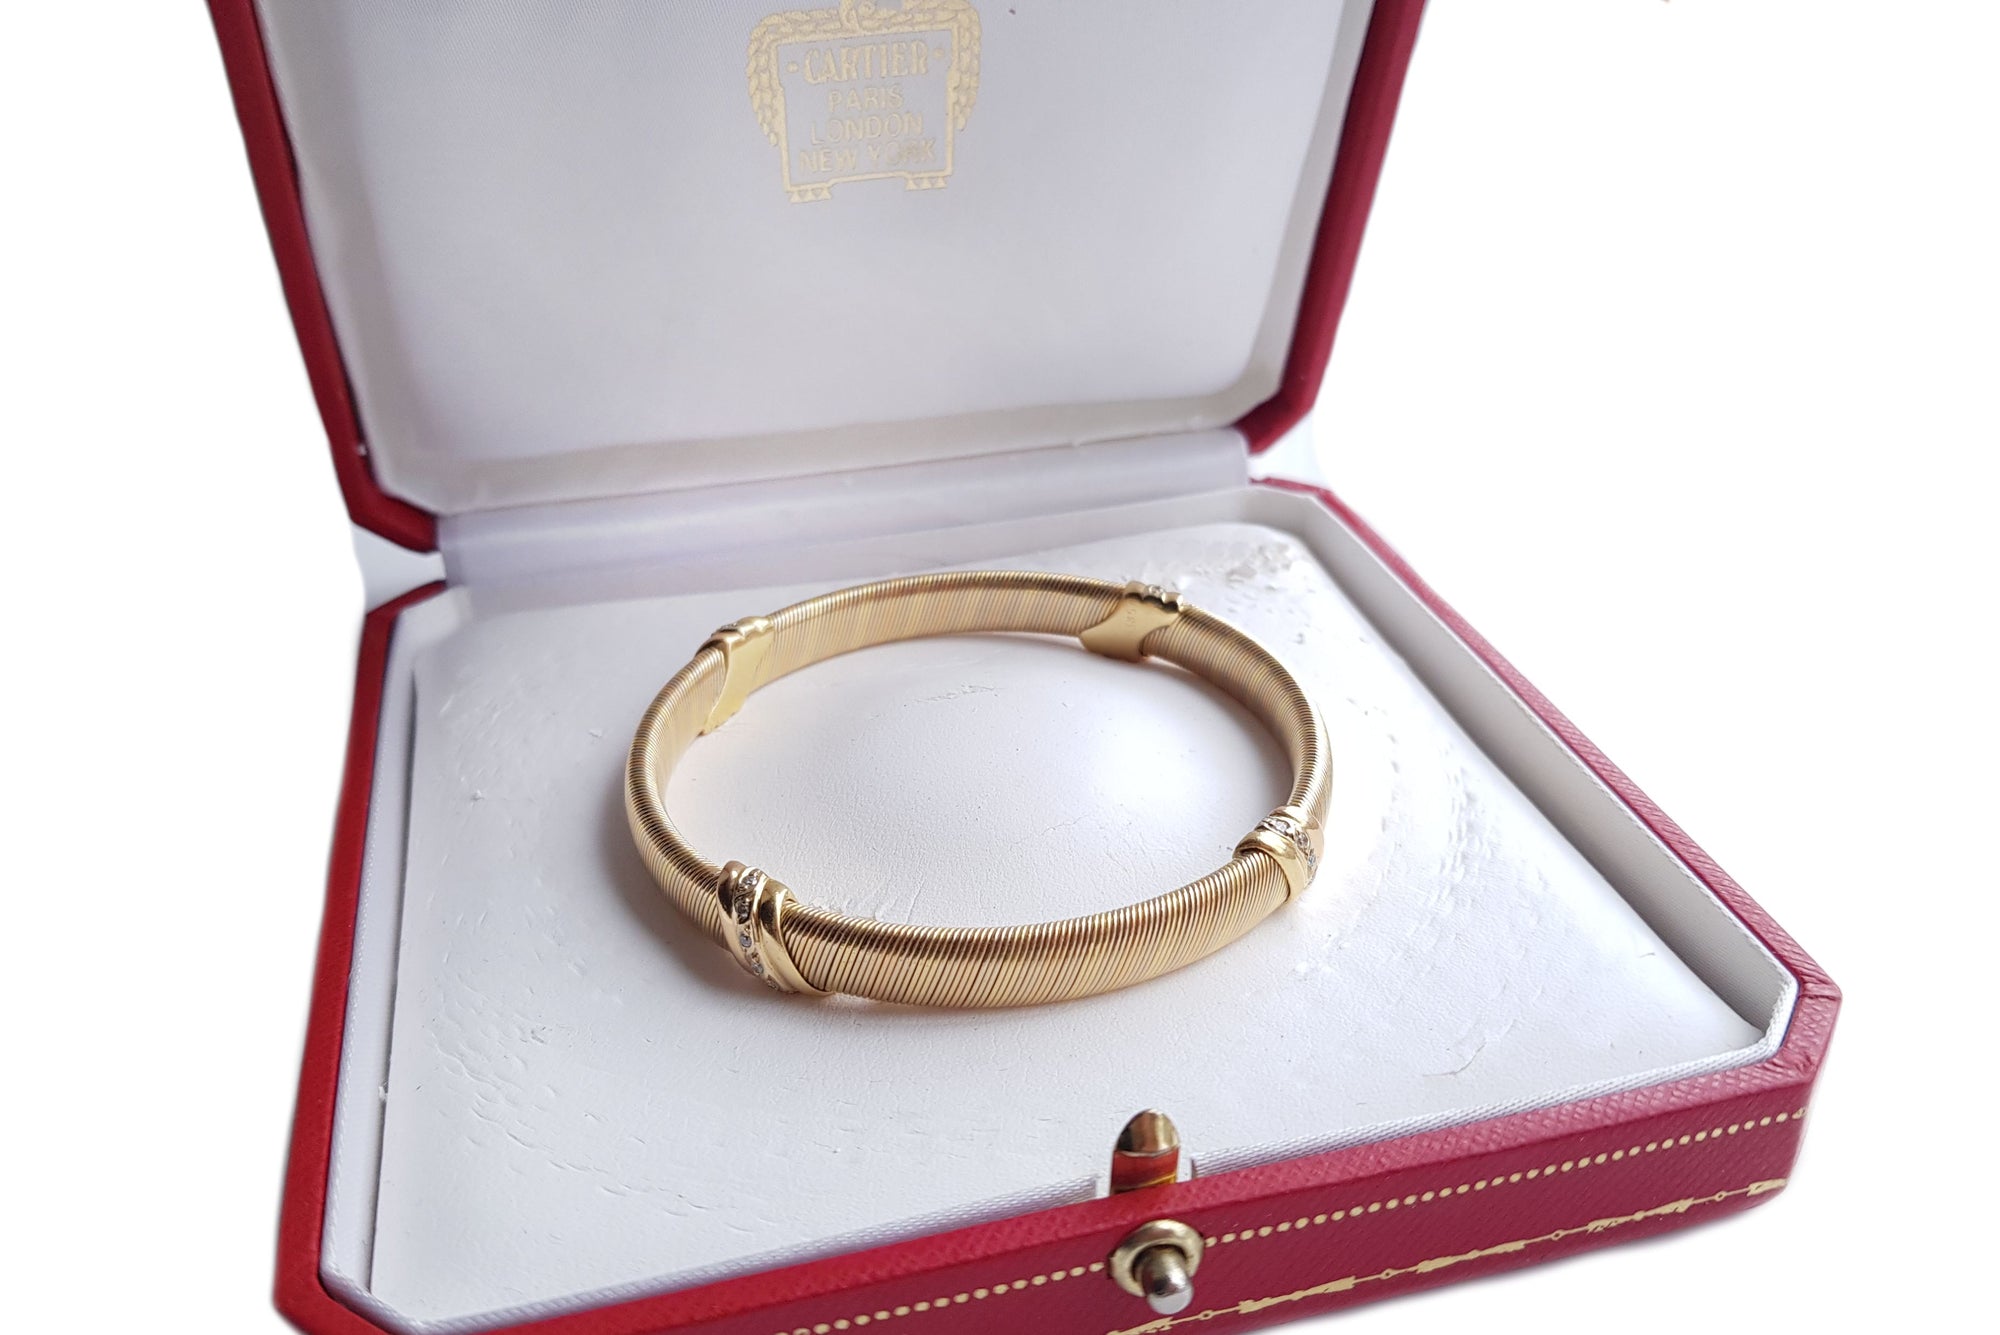 Vintage Cartier 1980s Trinity Diamond 3-Colour Gold Wire Bracelet